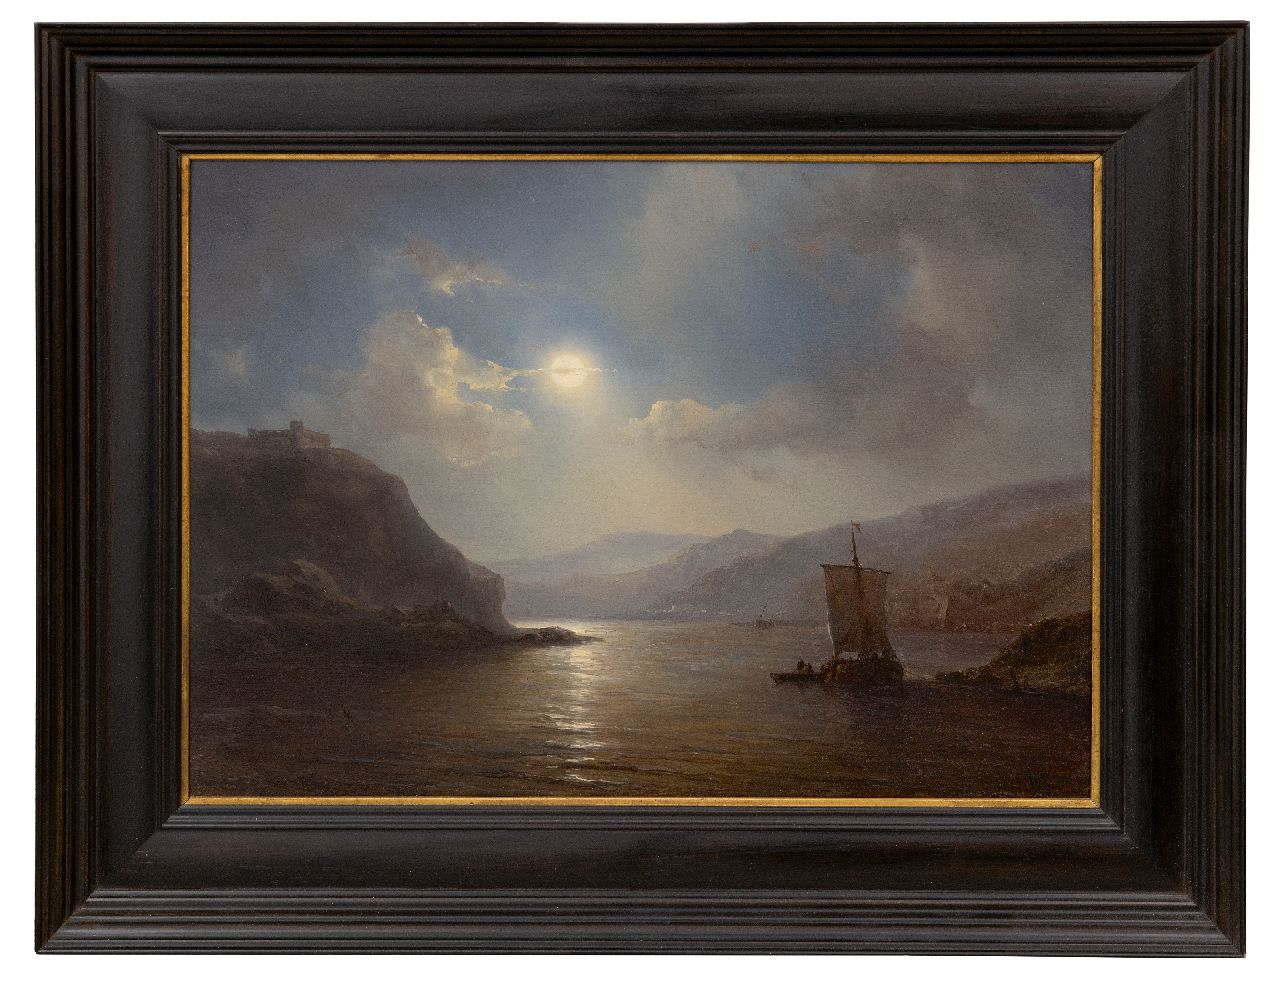 Meijer J.H.L.  | Johan Hendrik 'Louis' Meijer | Schilderijen te koop aangeboden | Rivier met afgemeerd schip bij maanlicht, olieverf op paneel 30,0 x 41,4 cm, gesigneerd rechtsonder